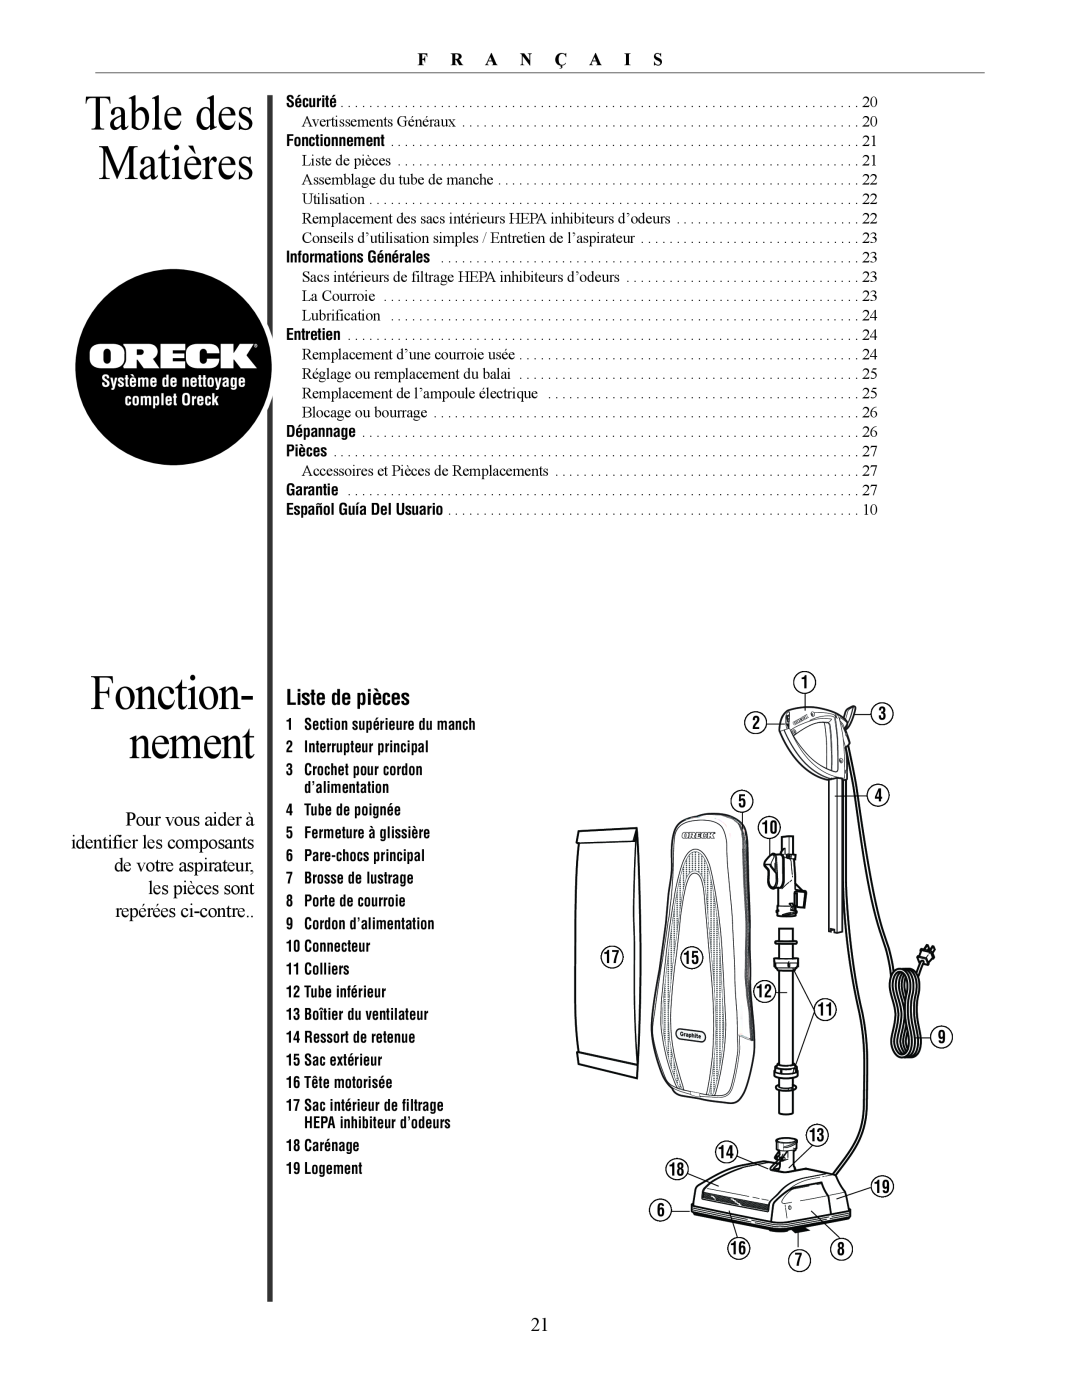 Oreck David manual Table des Matières, Fonction- nement, F R A N Ç A I S 